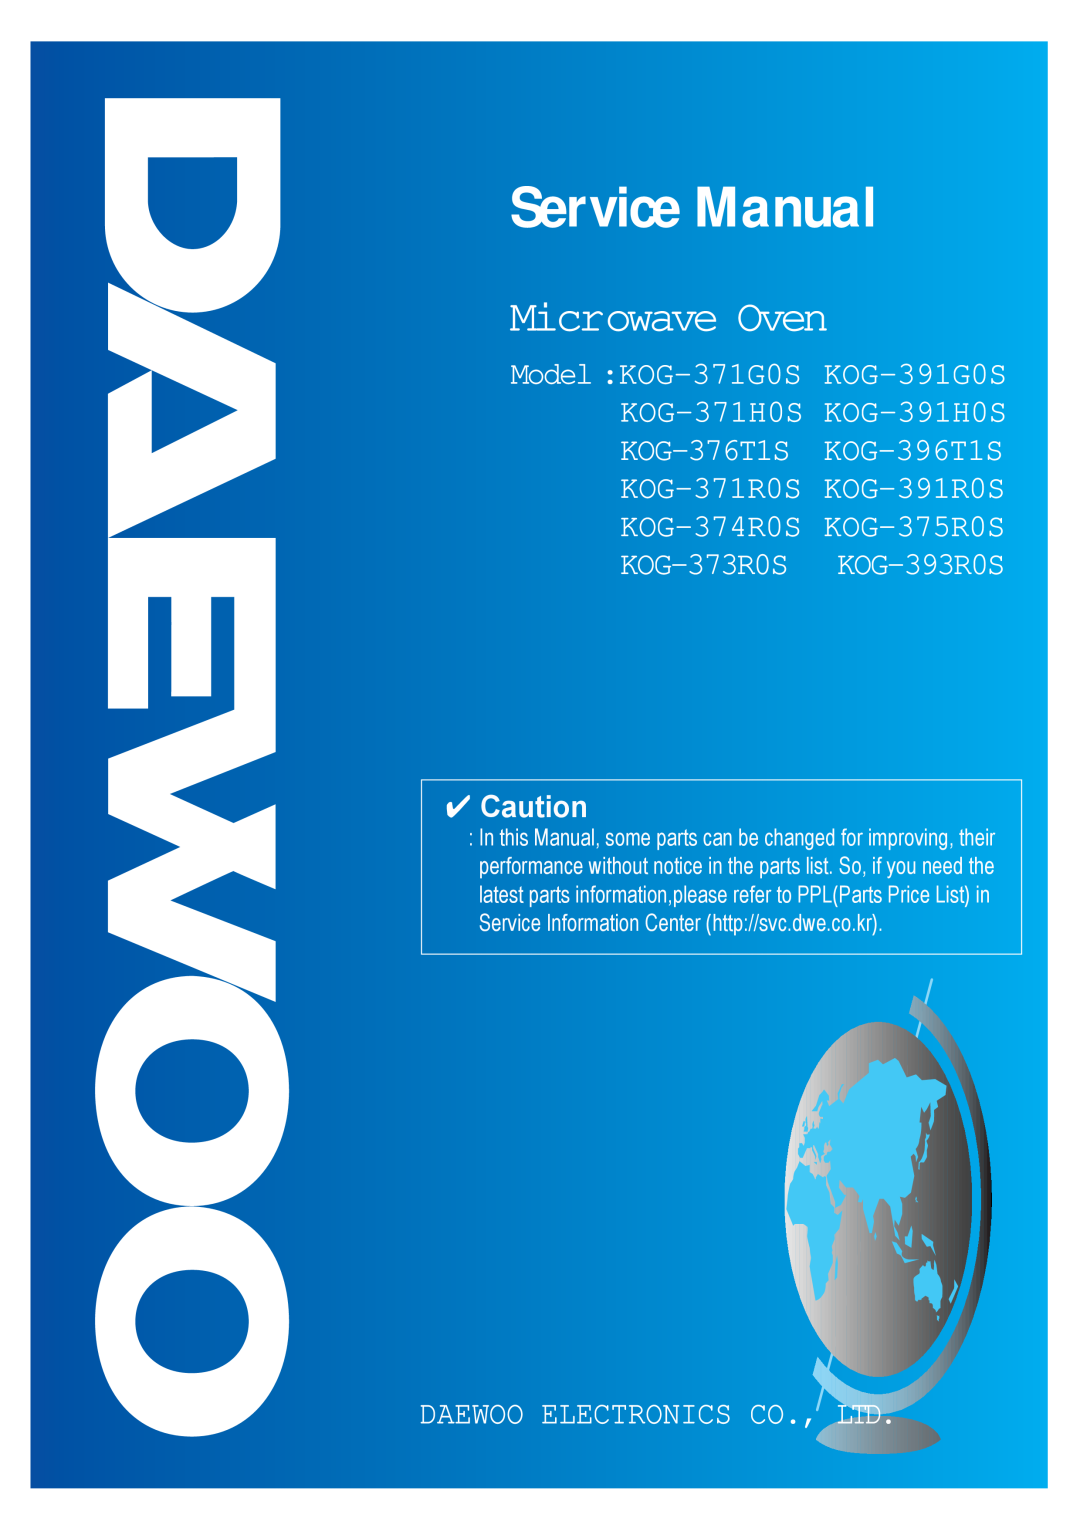 Daewoo KOG-373R0S service manual Service Manual, Microwave Oven, KOG-371H0S, KOG-376T1S, Model KOG-371G0S, KOG-391G0S 